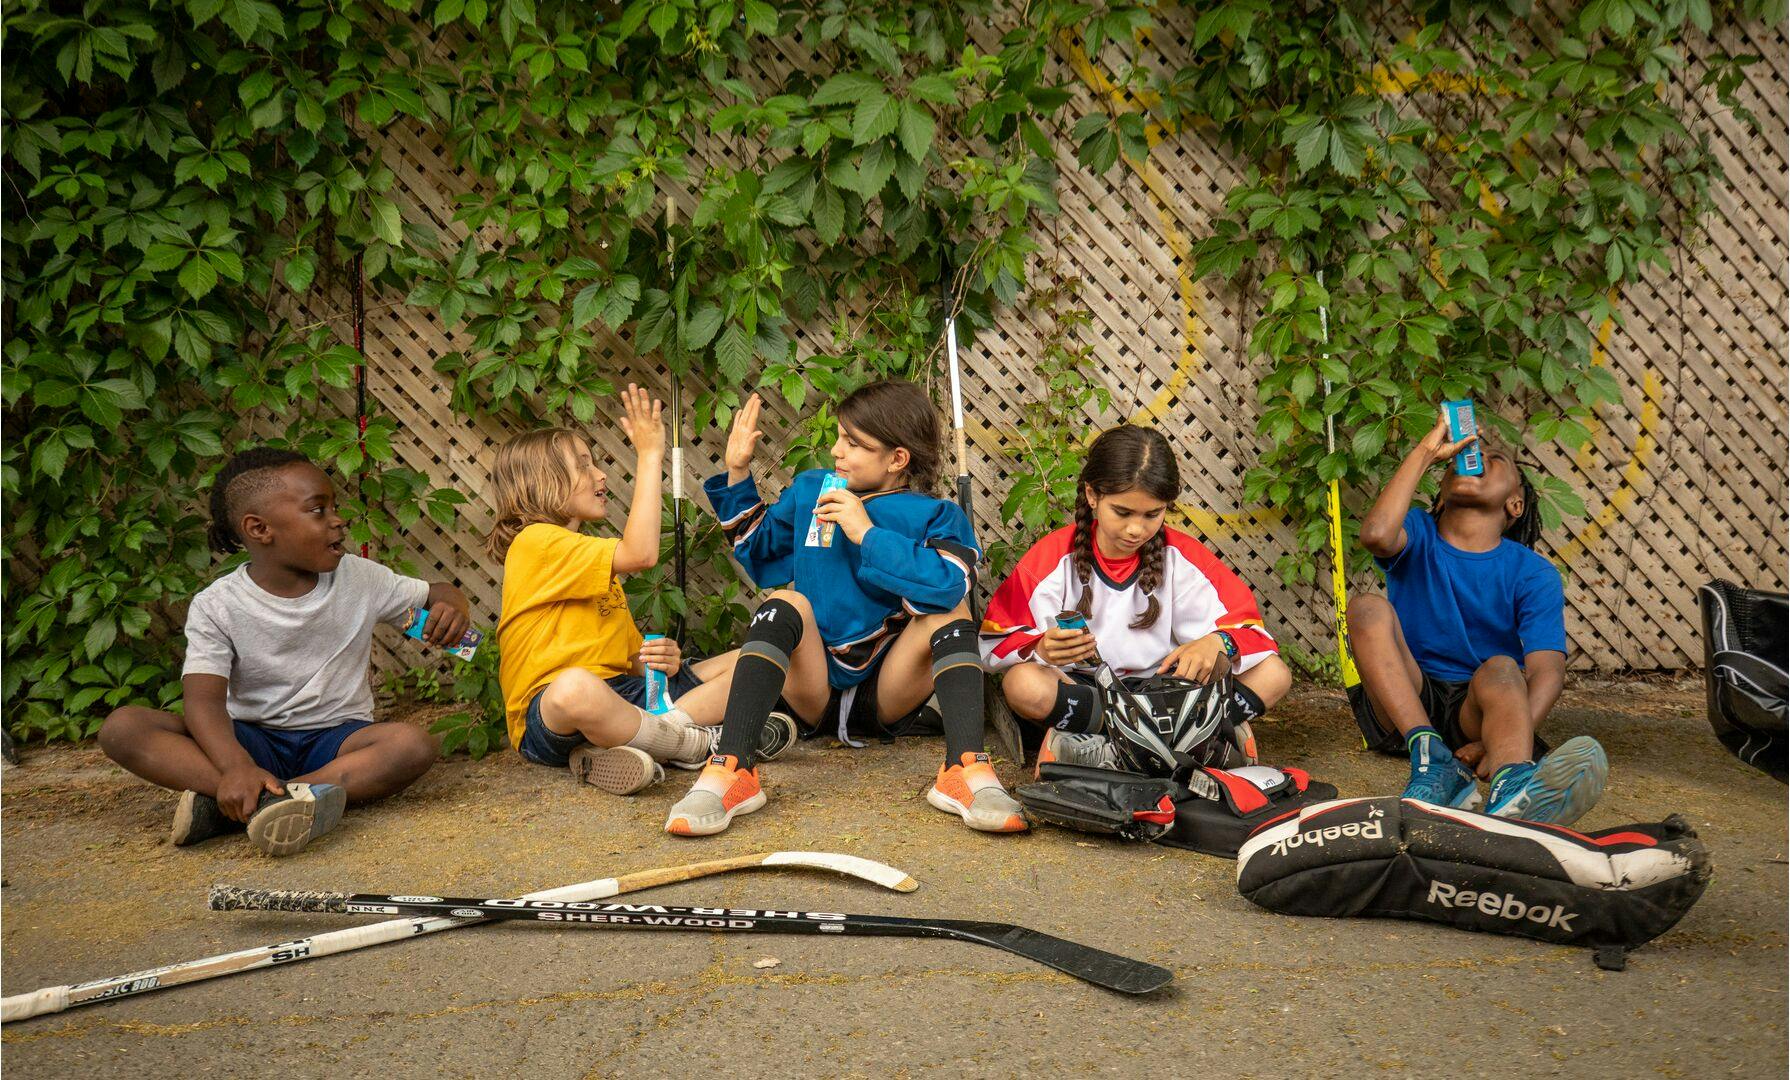 Kids Taking a Break From Hockey - Having a Snack